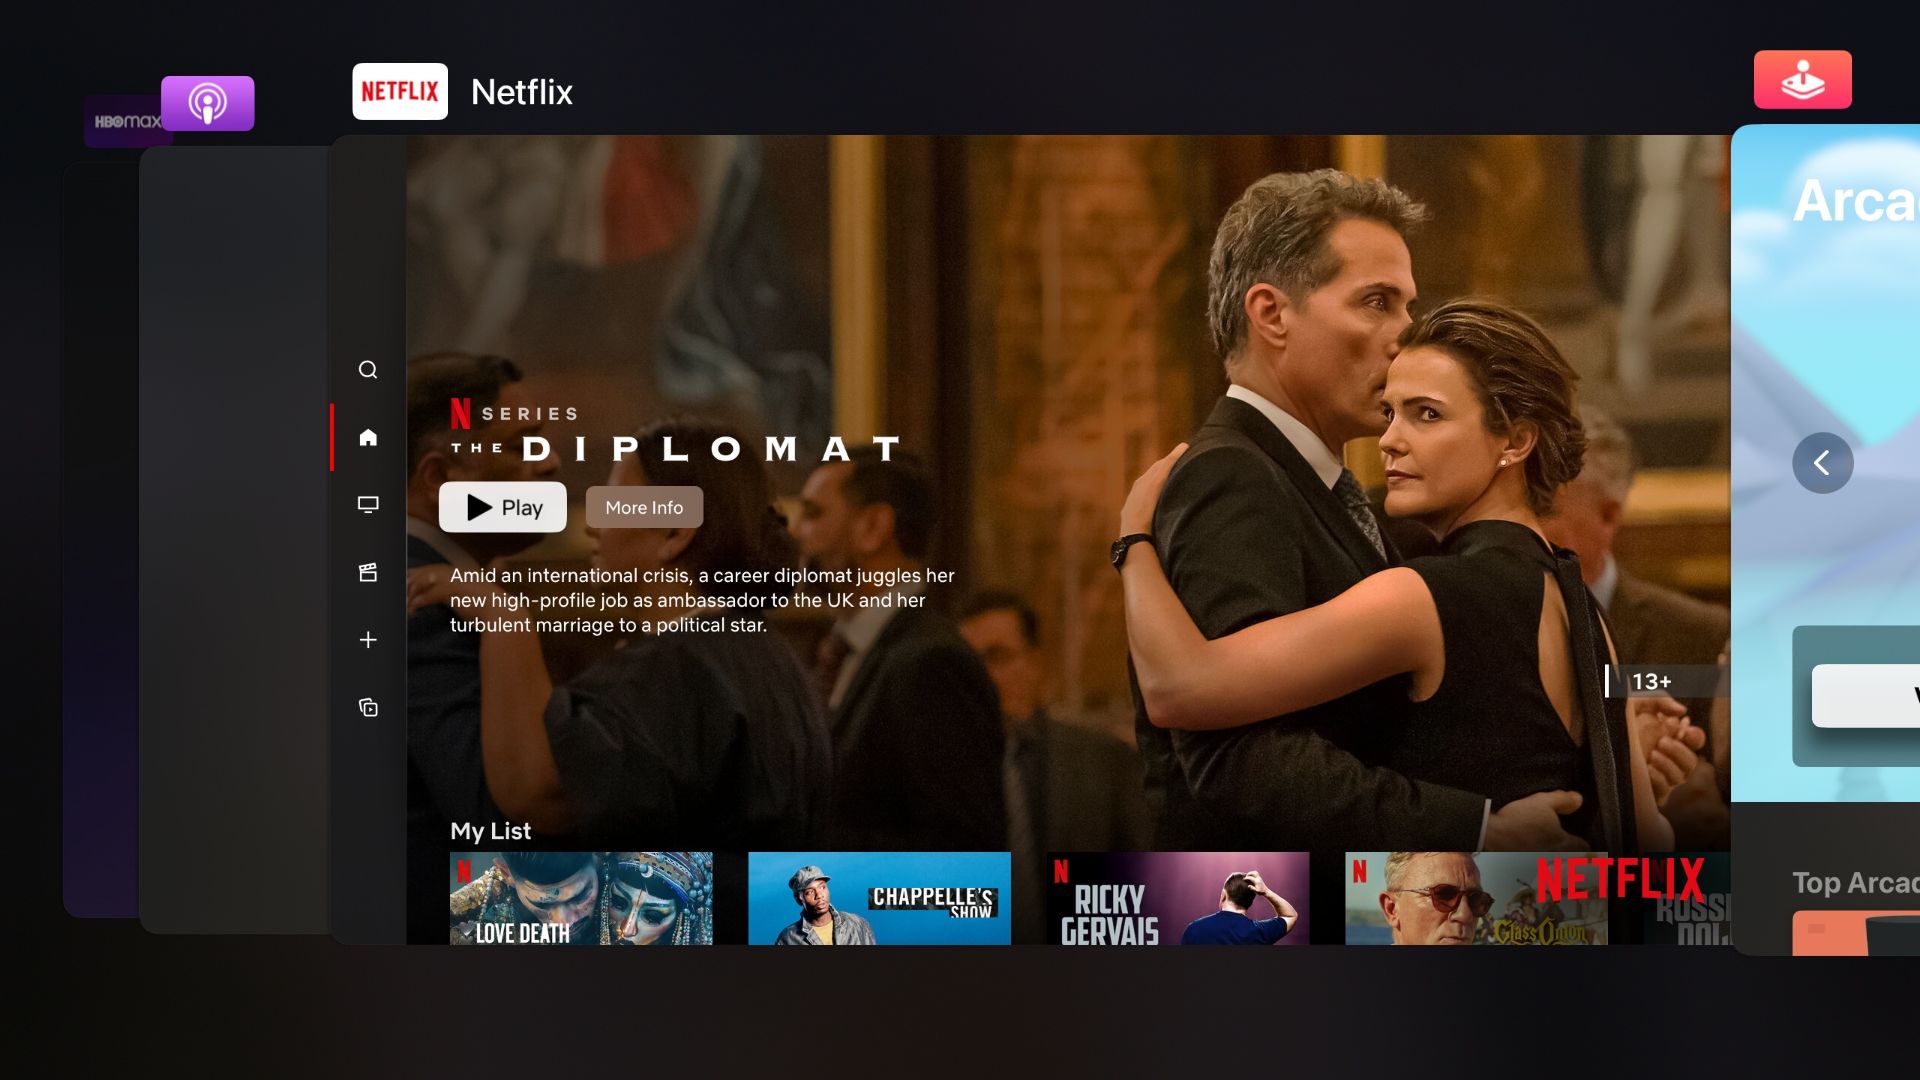 Captura de tela da Apple TV mostrando o alternador de aplicativos tvOS com o aplicativo Netflix no centro